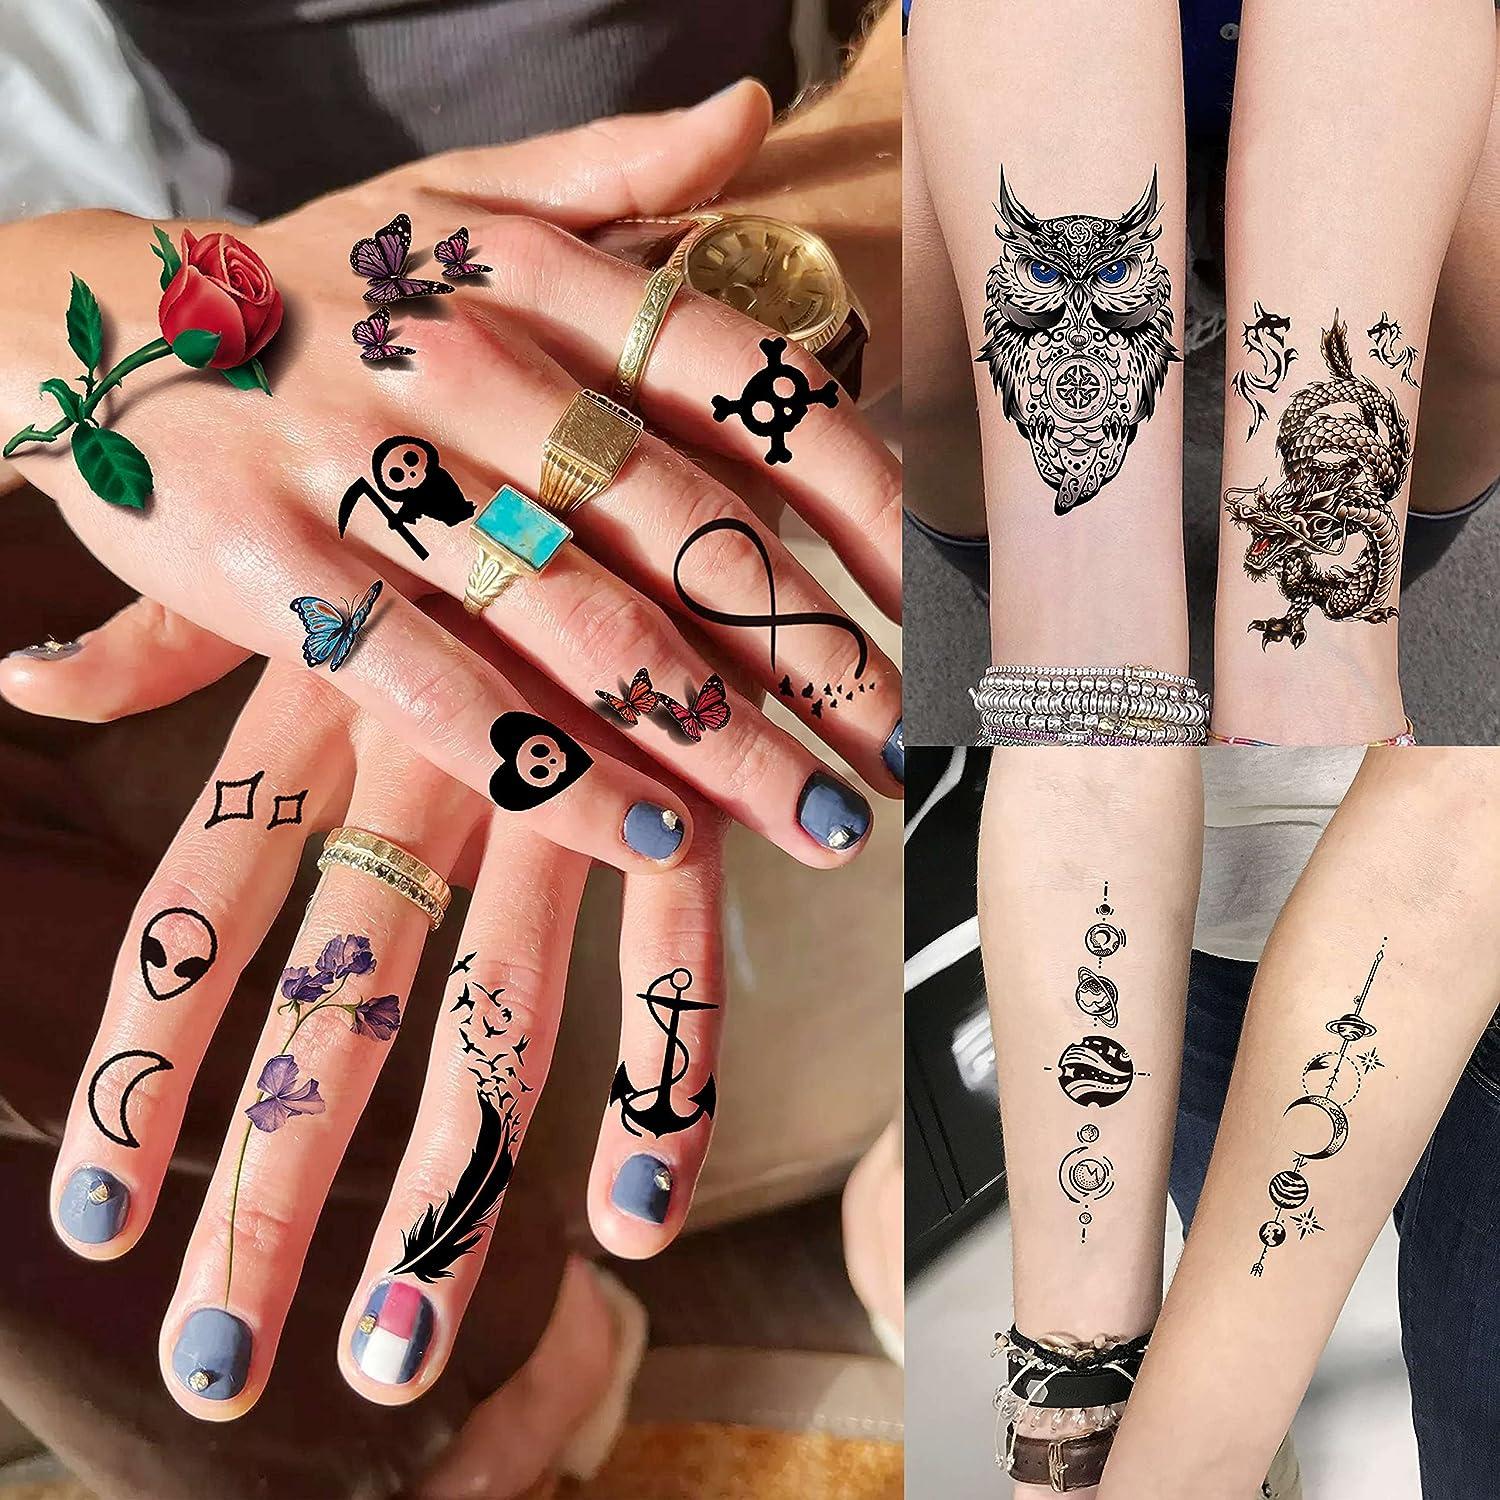 Three Stars Temporary Tattoo (Set of 3) – Small Tattoos